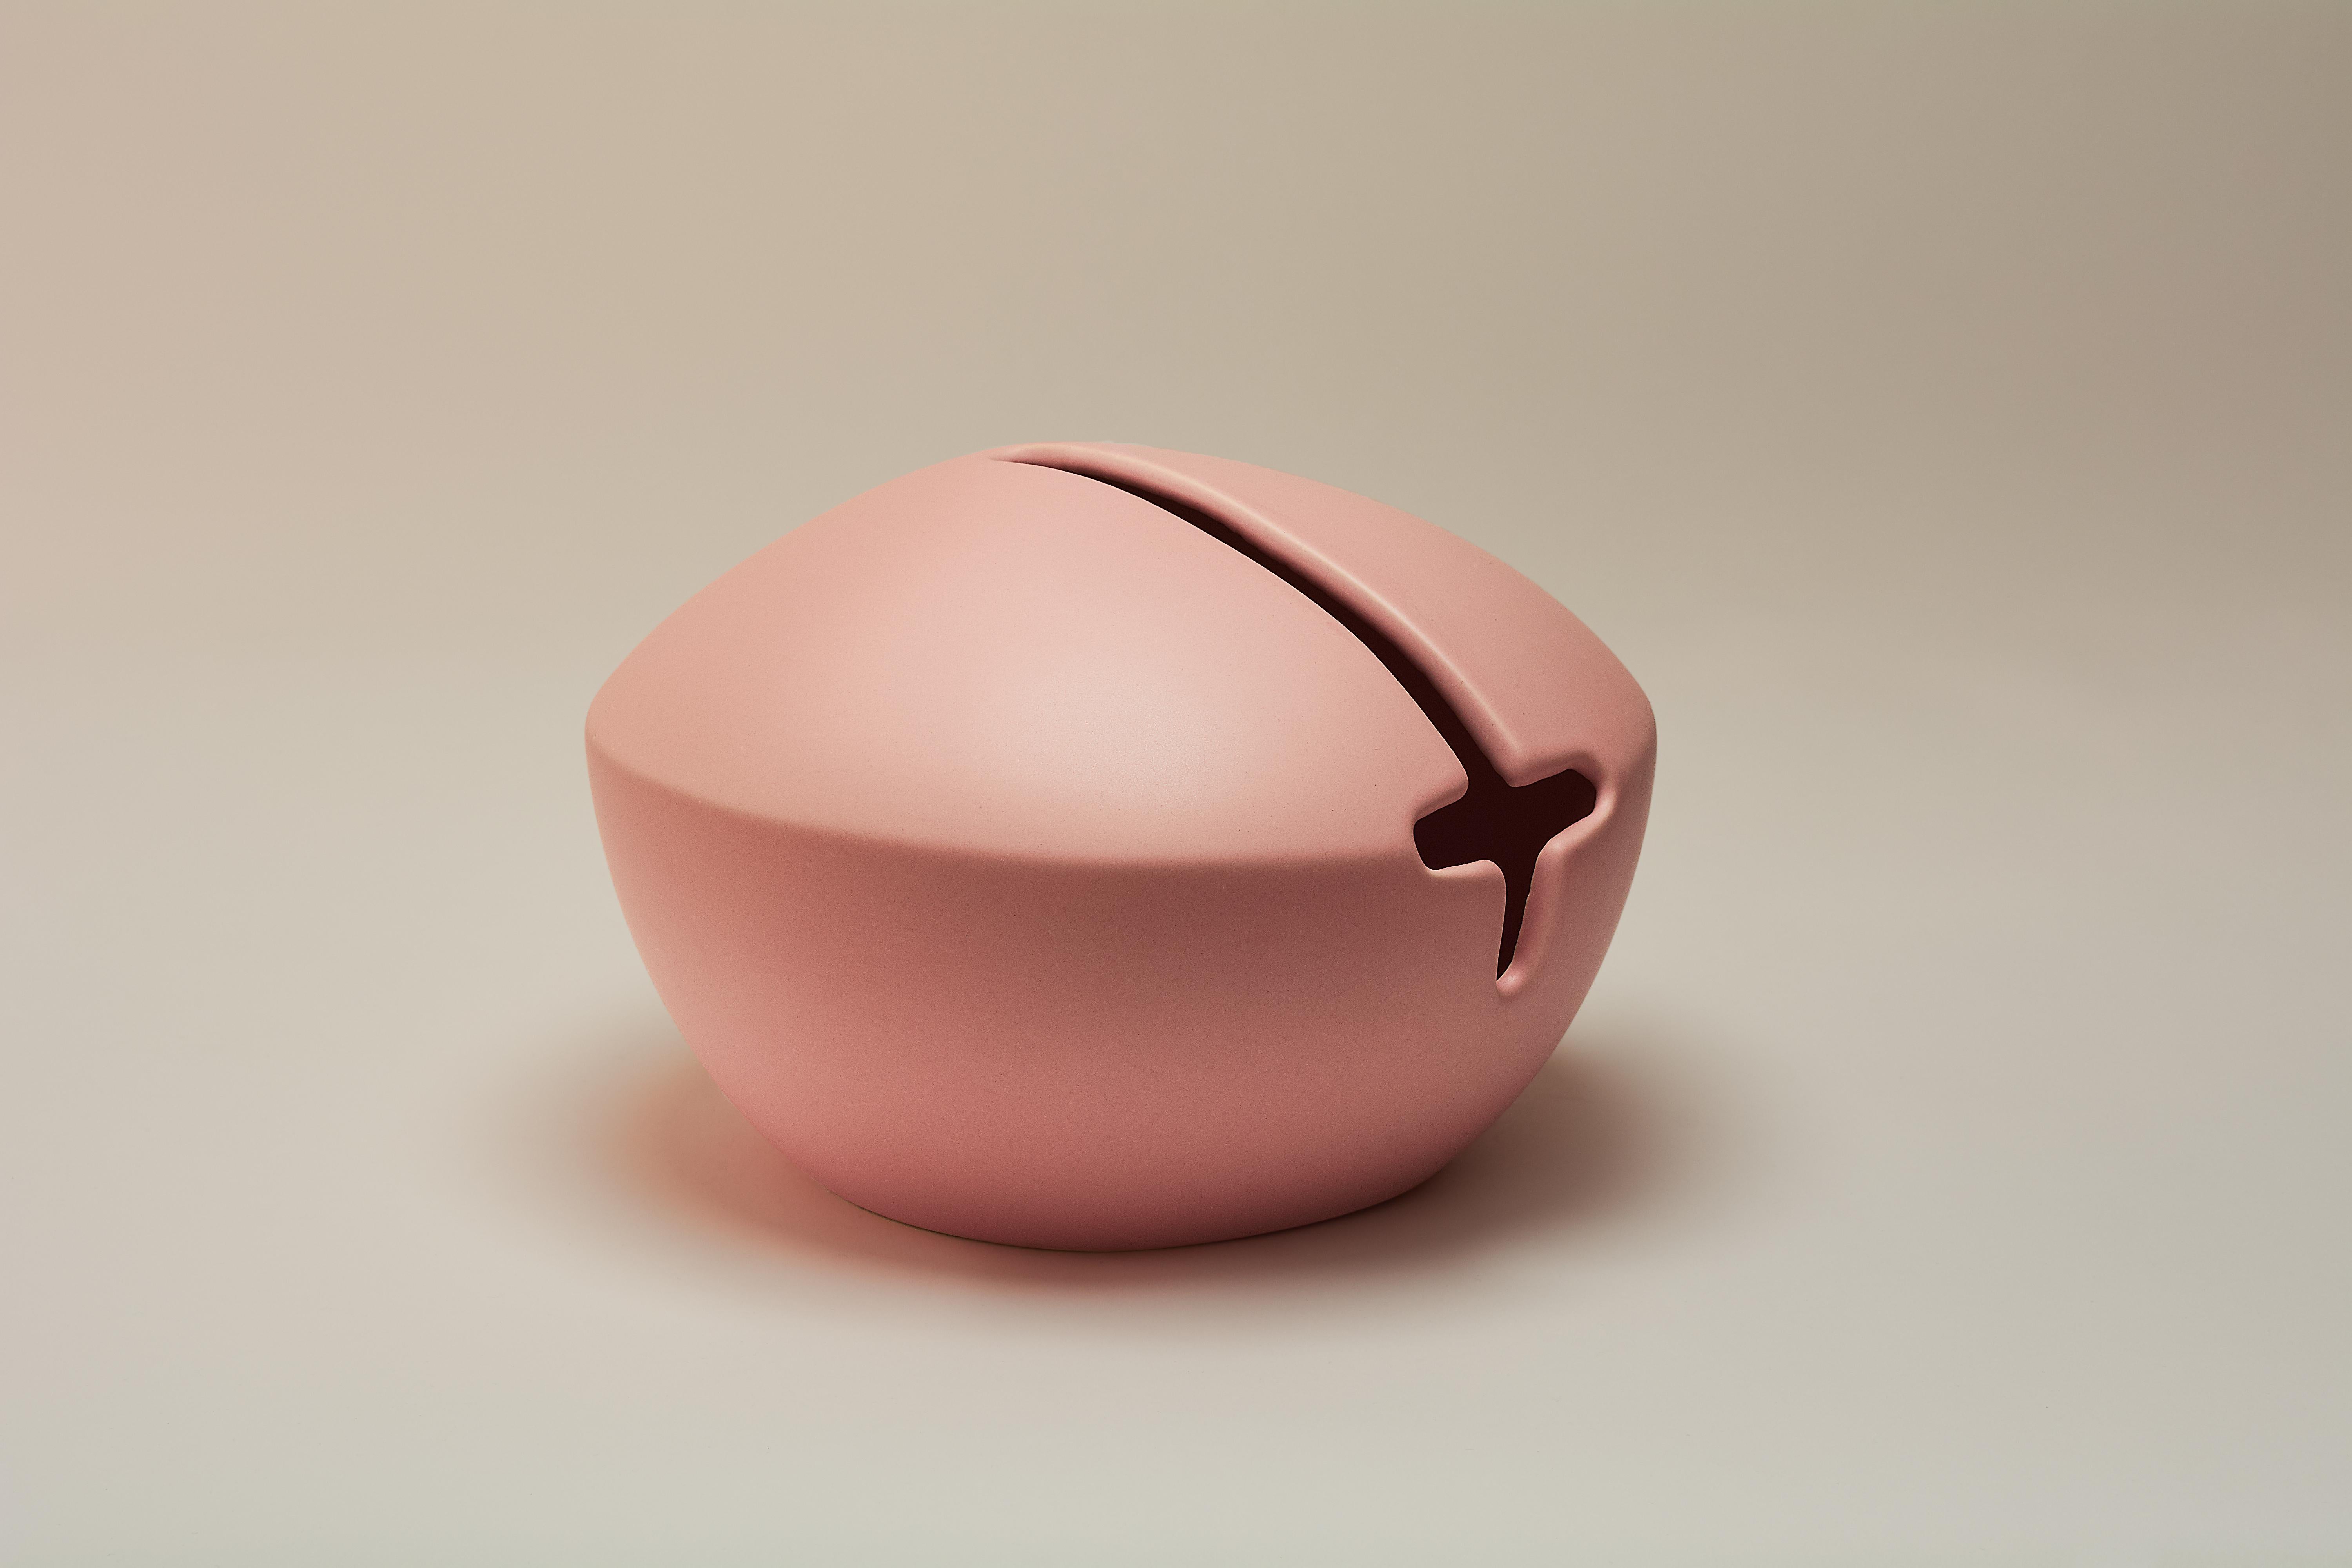 Momo-Vase von Lilia Cruz Corona Garduño
Abmessungen: B 26 x T 26 x H 18 cm
MATERIALIEN: Hochtemperaturkeramik (Steinzeug) und keramische Glasur

Das Studio Platalea ist aus einer Leidenschaft für Kunst und Design entstanden. Wir finden es toll, dass